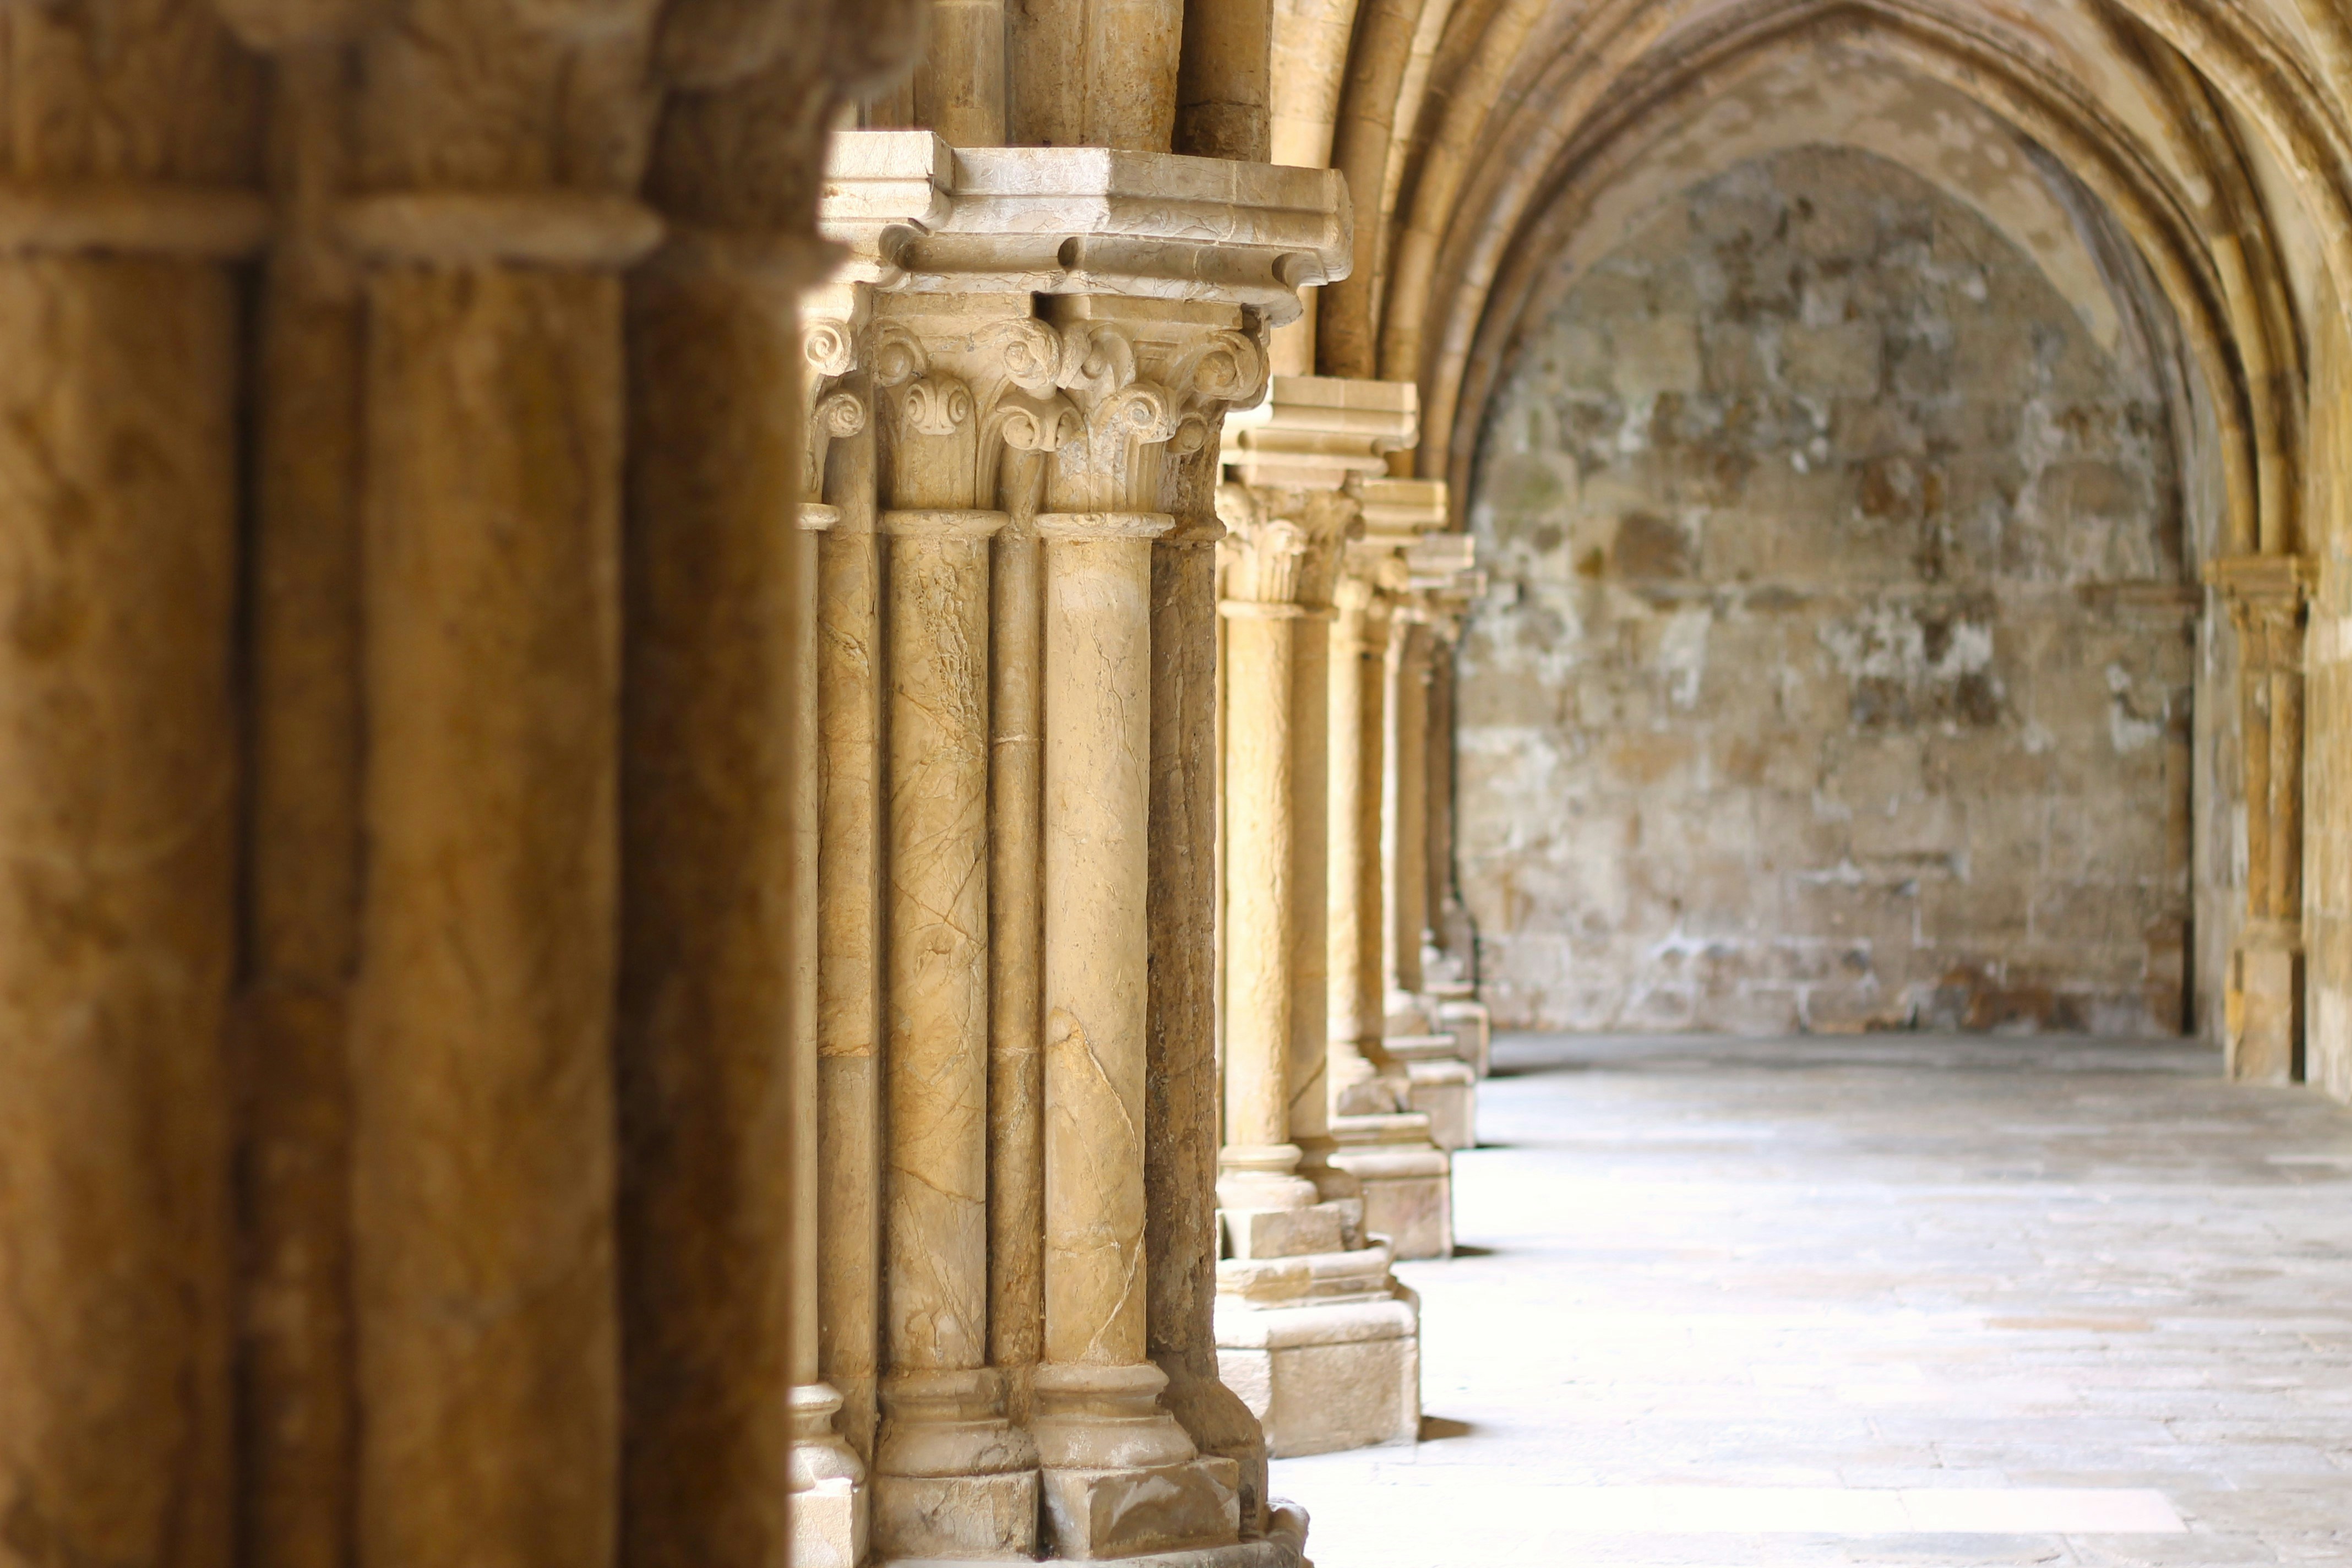 Details of the arches at Sé de Coimbra.